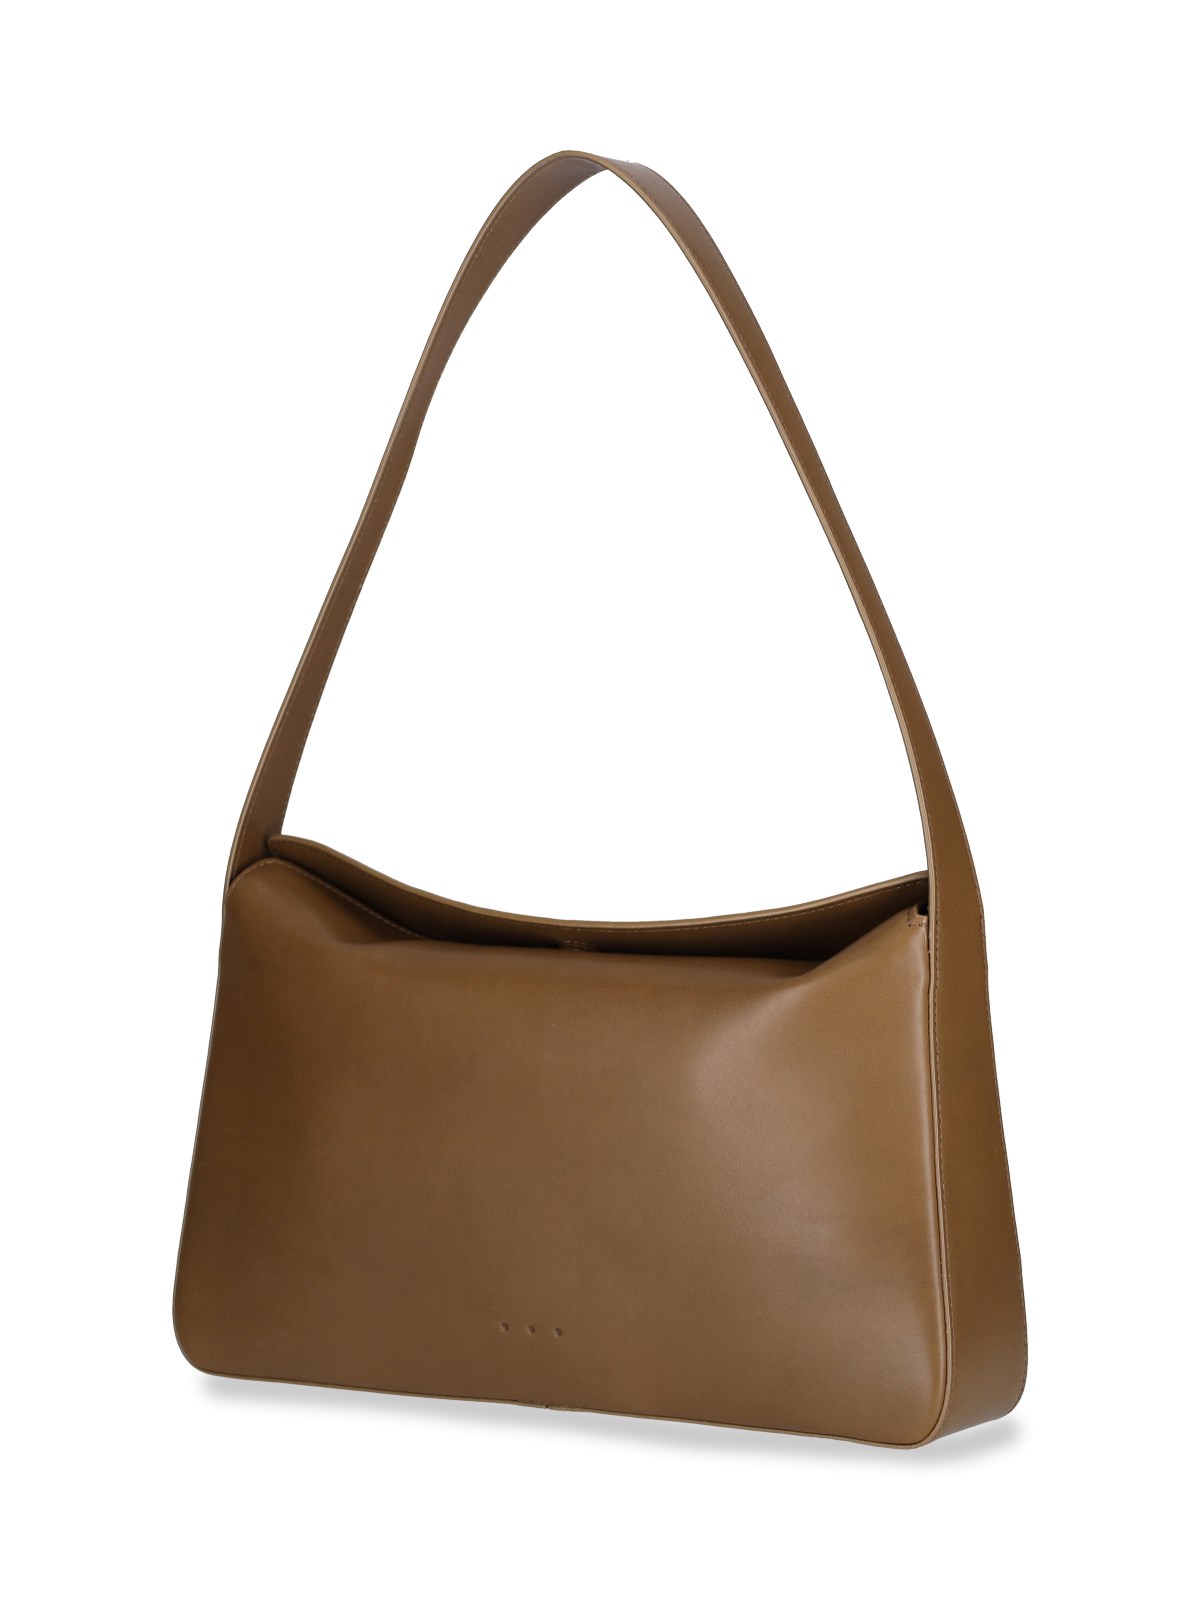 Aesther ekme 'soft baguette' shoulder bag available on SUGAR - 123175